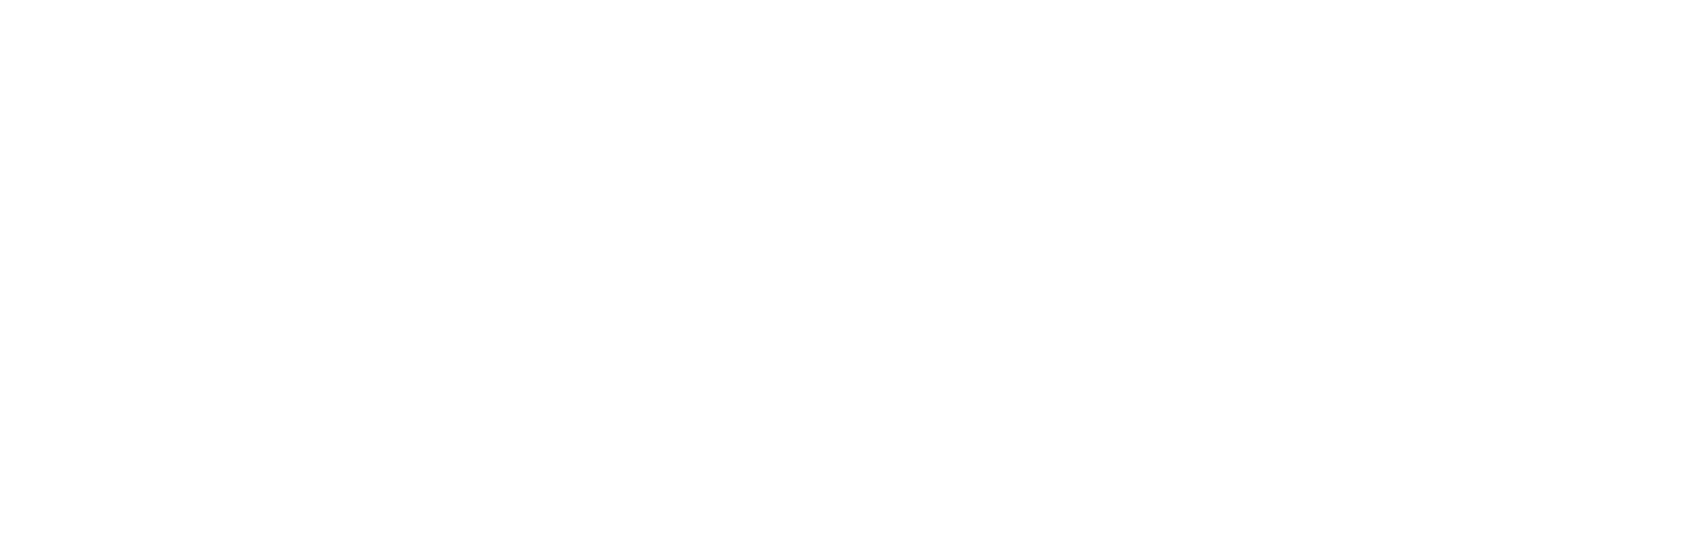 Wapen van Beckum logo wit